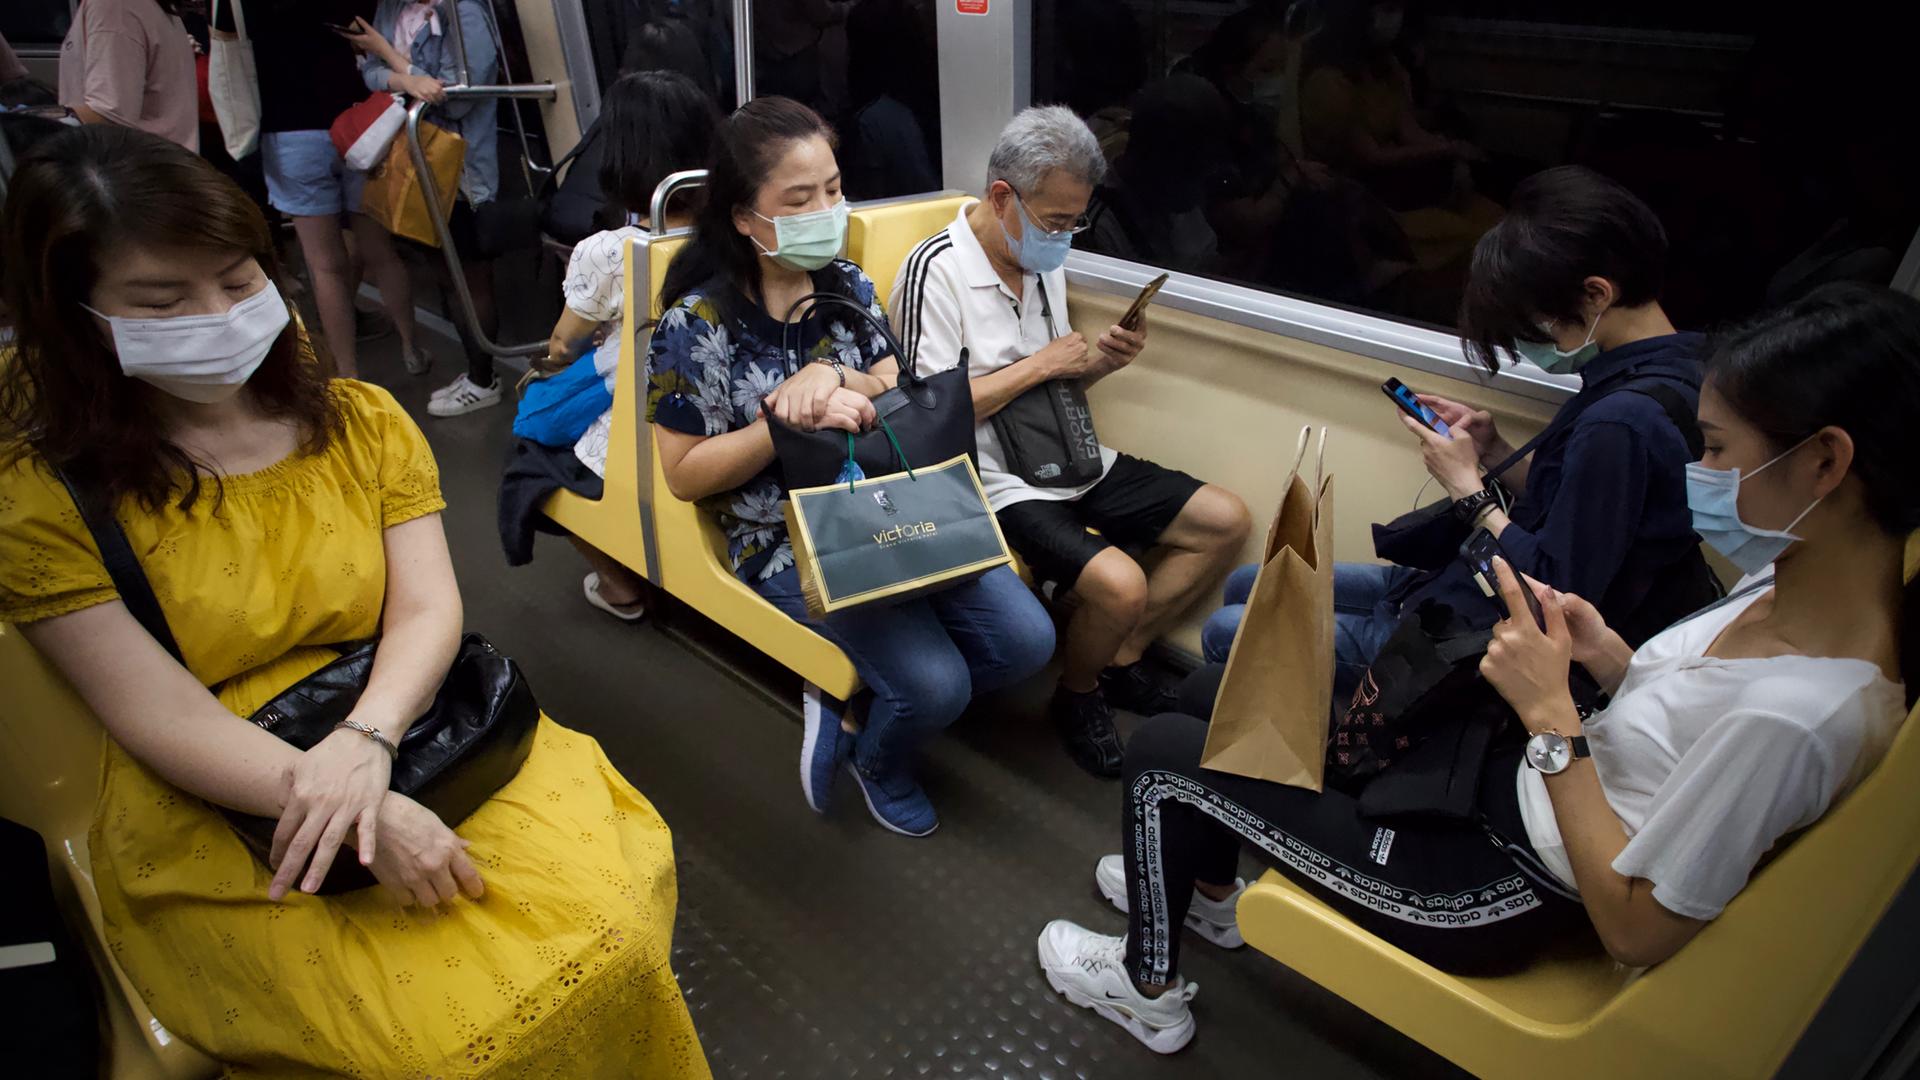 Fahrgäste in der U-Bahn von Taipeh. Die meisten tragen Masken und schauen auf ihre Smartphones.